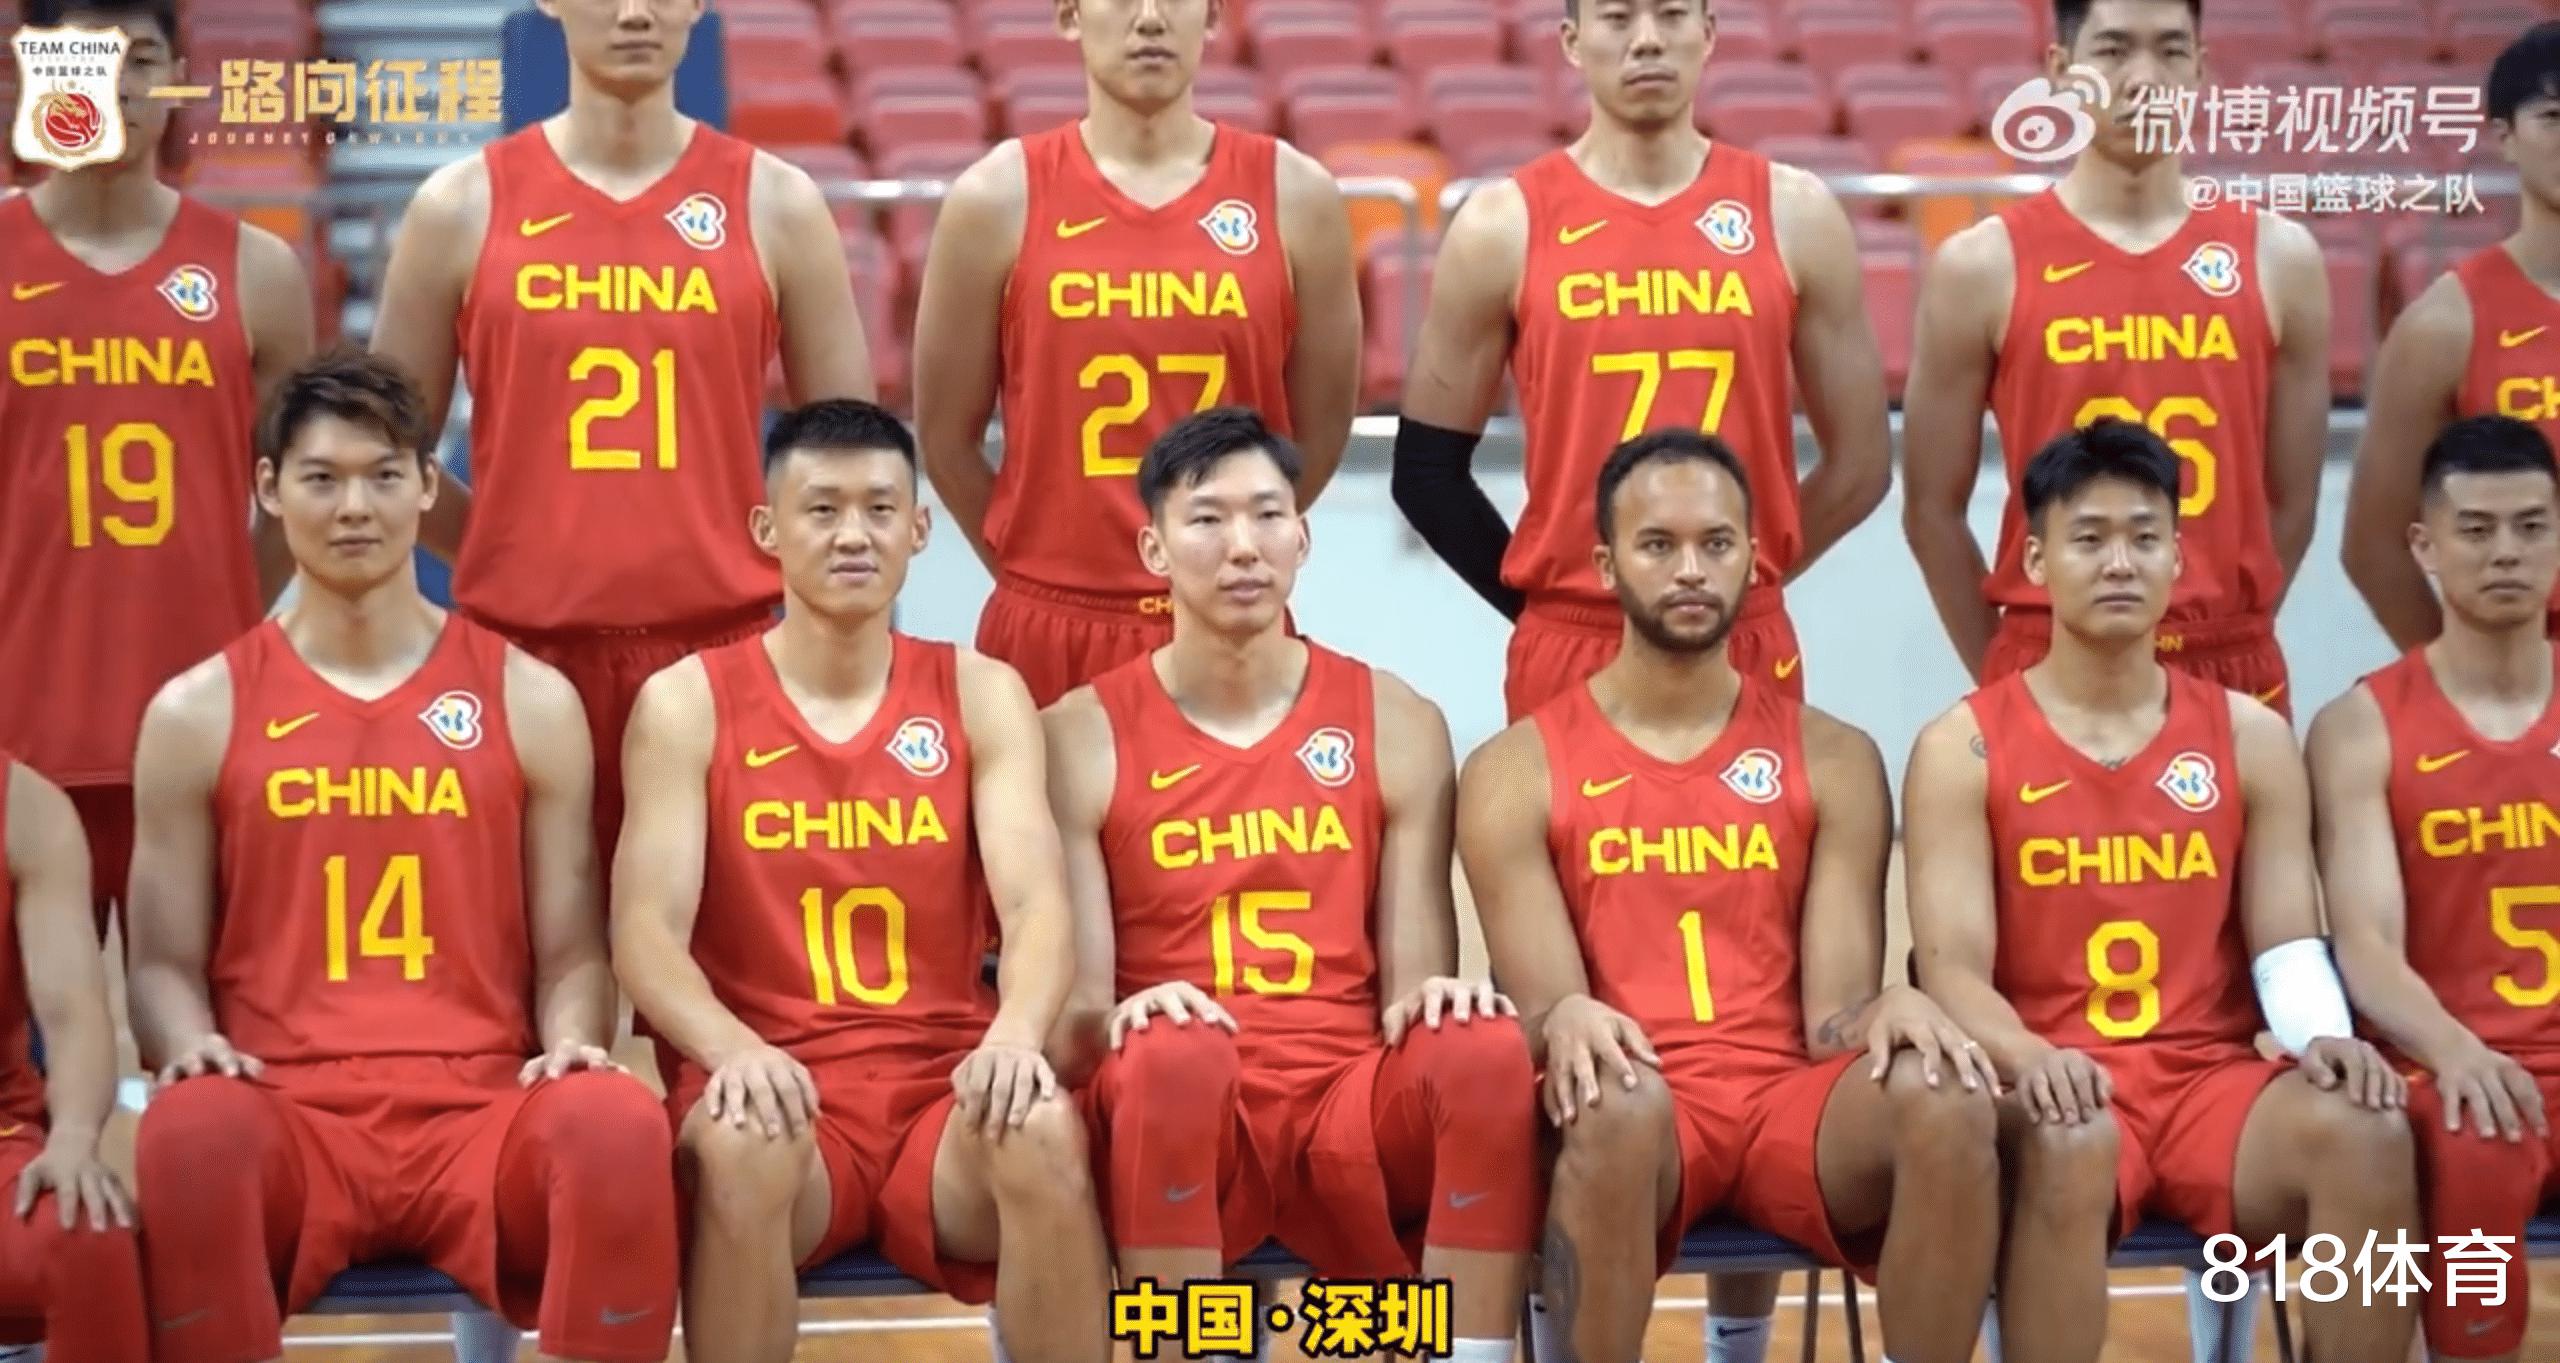 中国男篮拍世界杯全家福! 李凯尔C位就座, 周琦转会终落听笑容灿烂